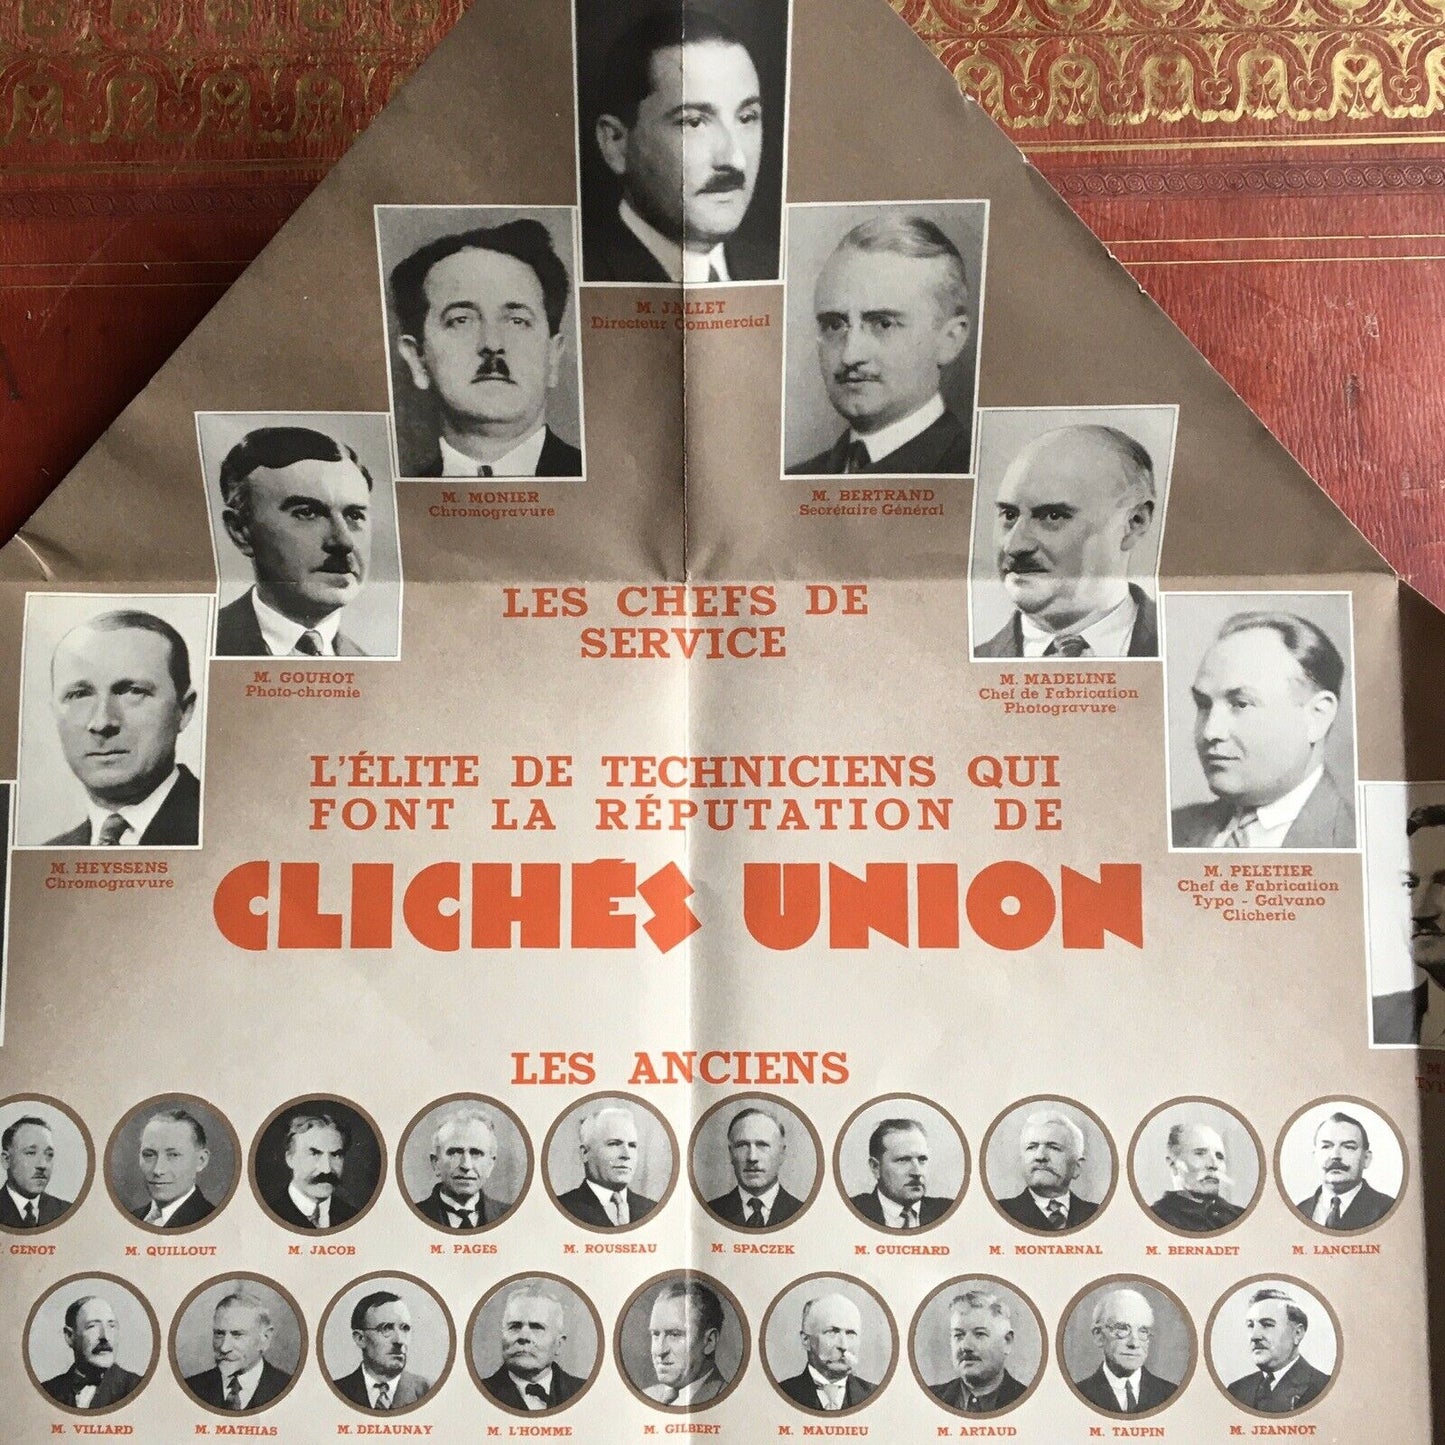 Clichés Union (Gillot…) publicité dépliante & trombinoscope — lithographie —1930